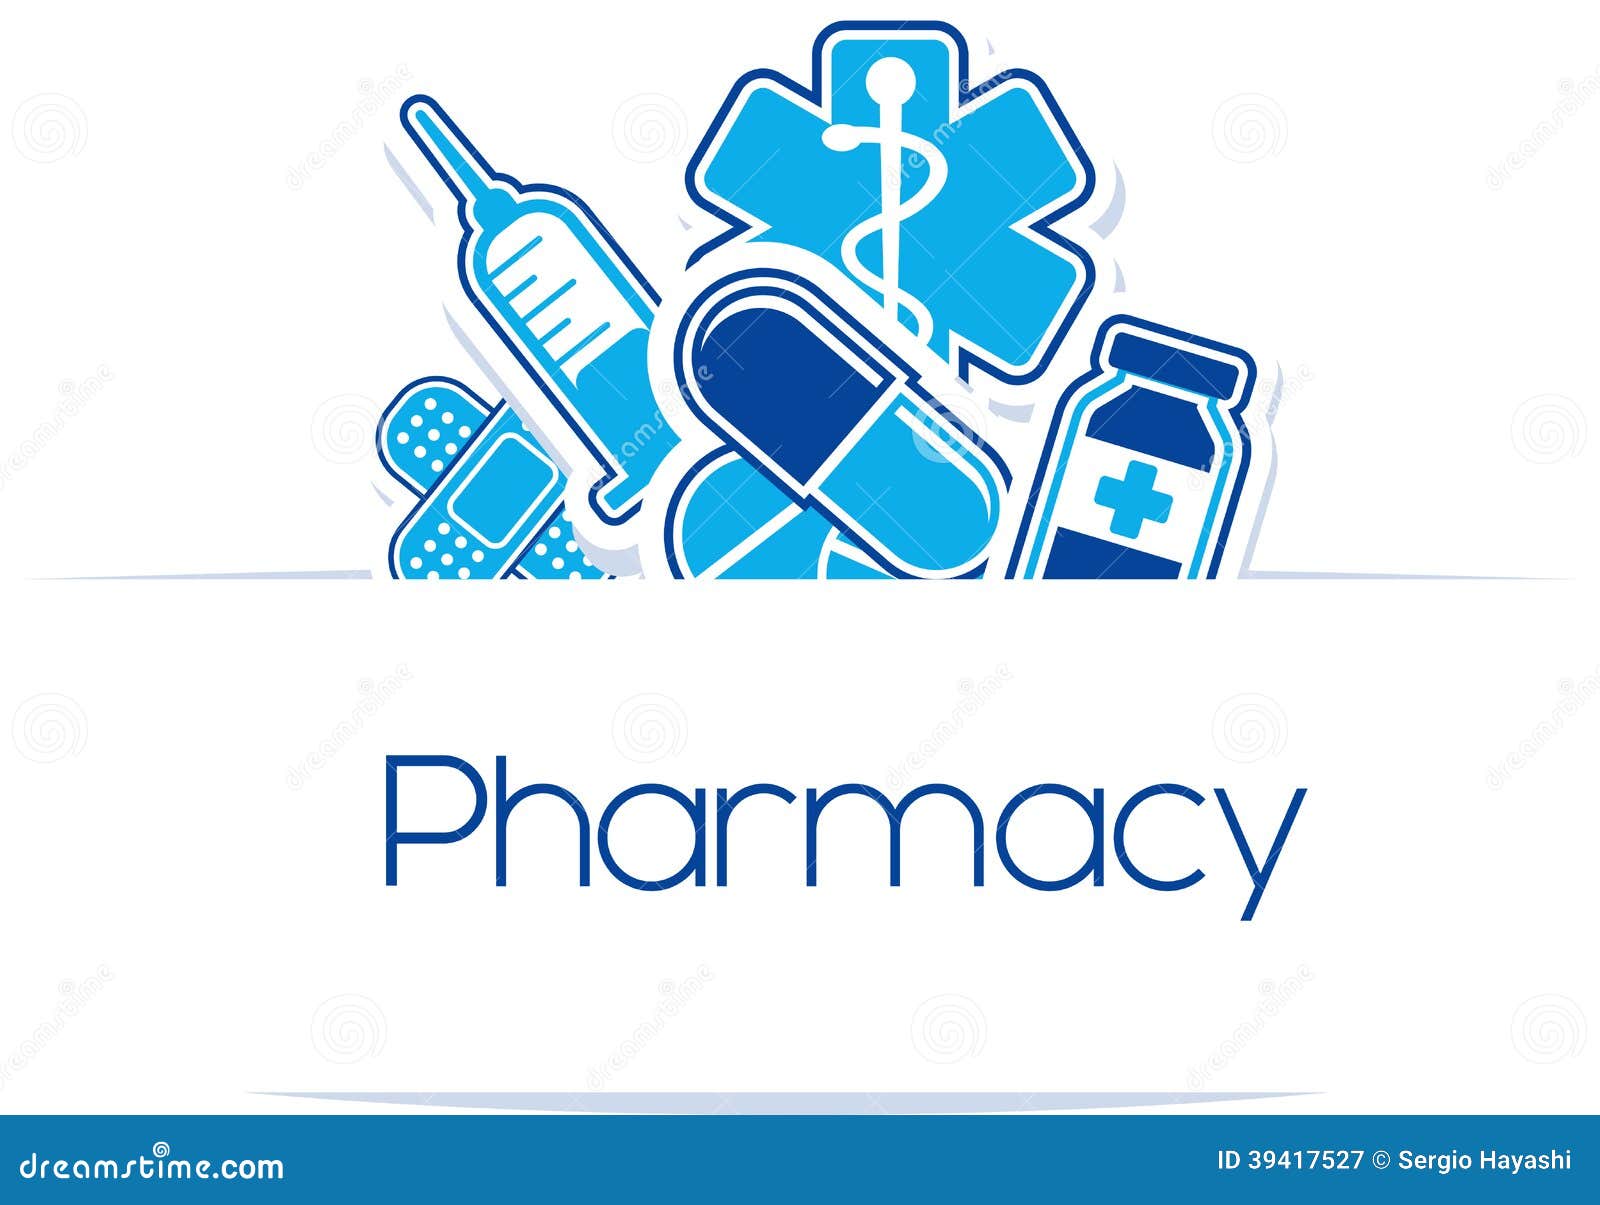 pharmacy logo clip art - photo #43